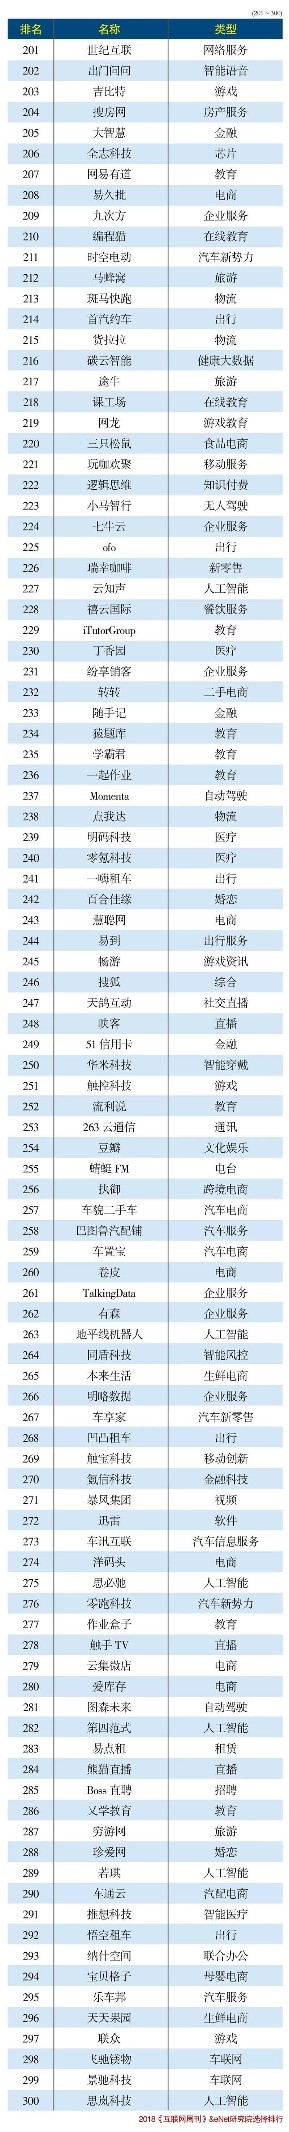 海风教育入选2018中国互联网300强